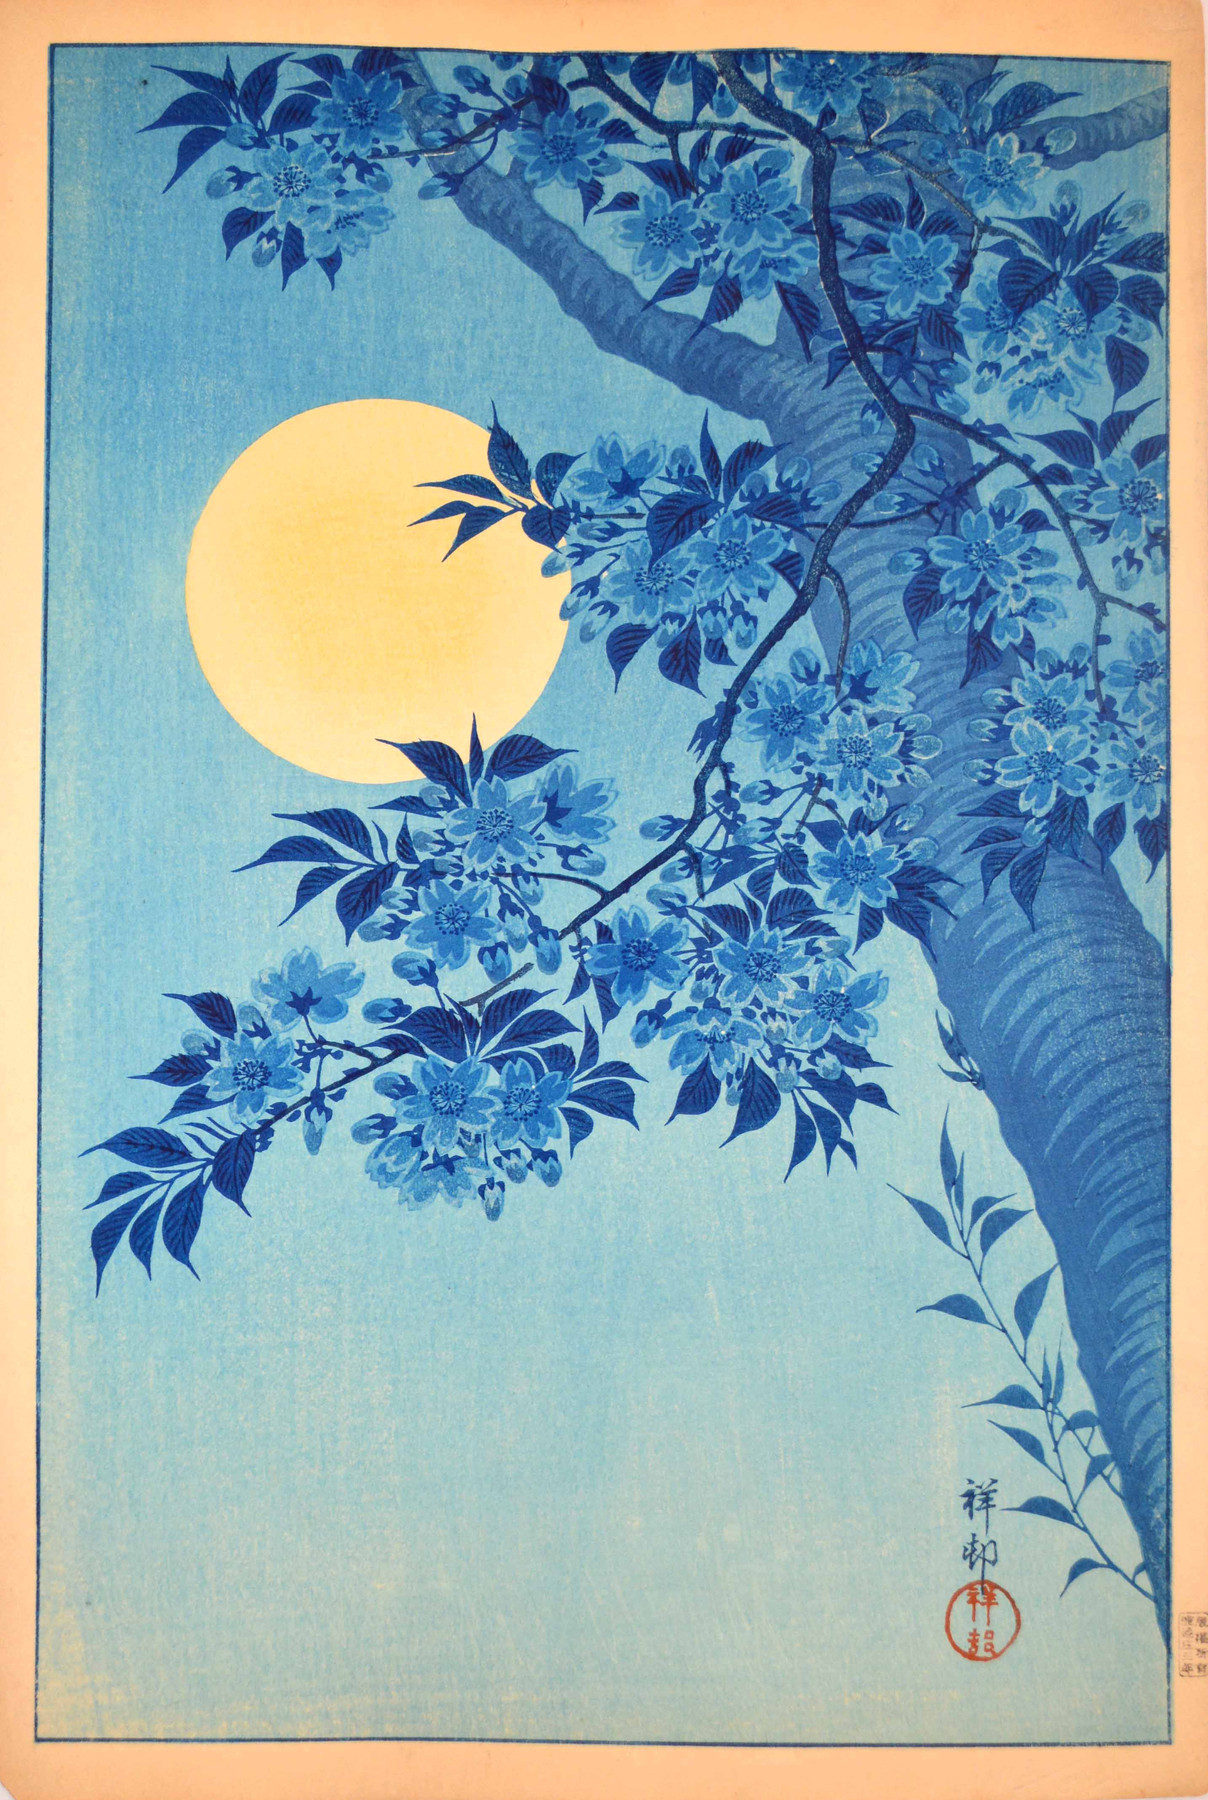 Kwitnąca wiśnia i pełnia księżyca by Ohara Koson - 1932 - 26 x 39 cm 